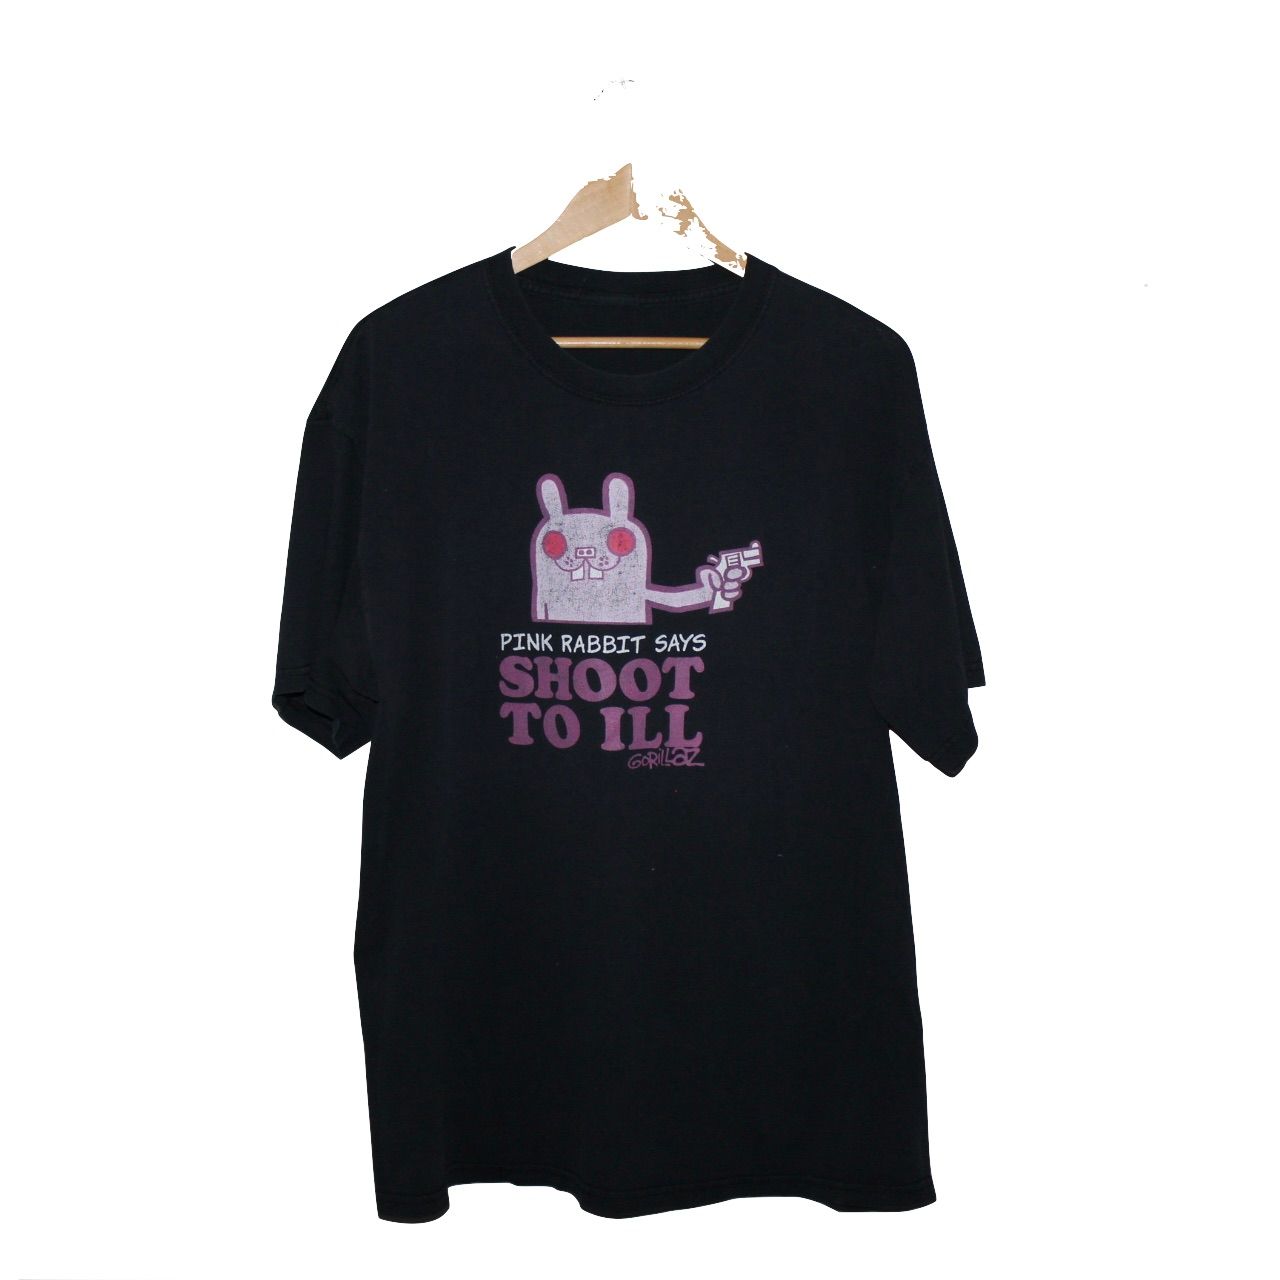 Vintage Gorillaz Pink Rabbit Shoot To iLL Phase 1 Tour Tee Size US XL / EU 56 / 4 - 1 Preview